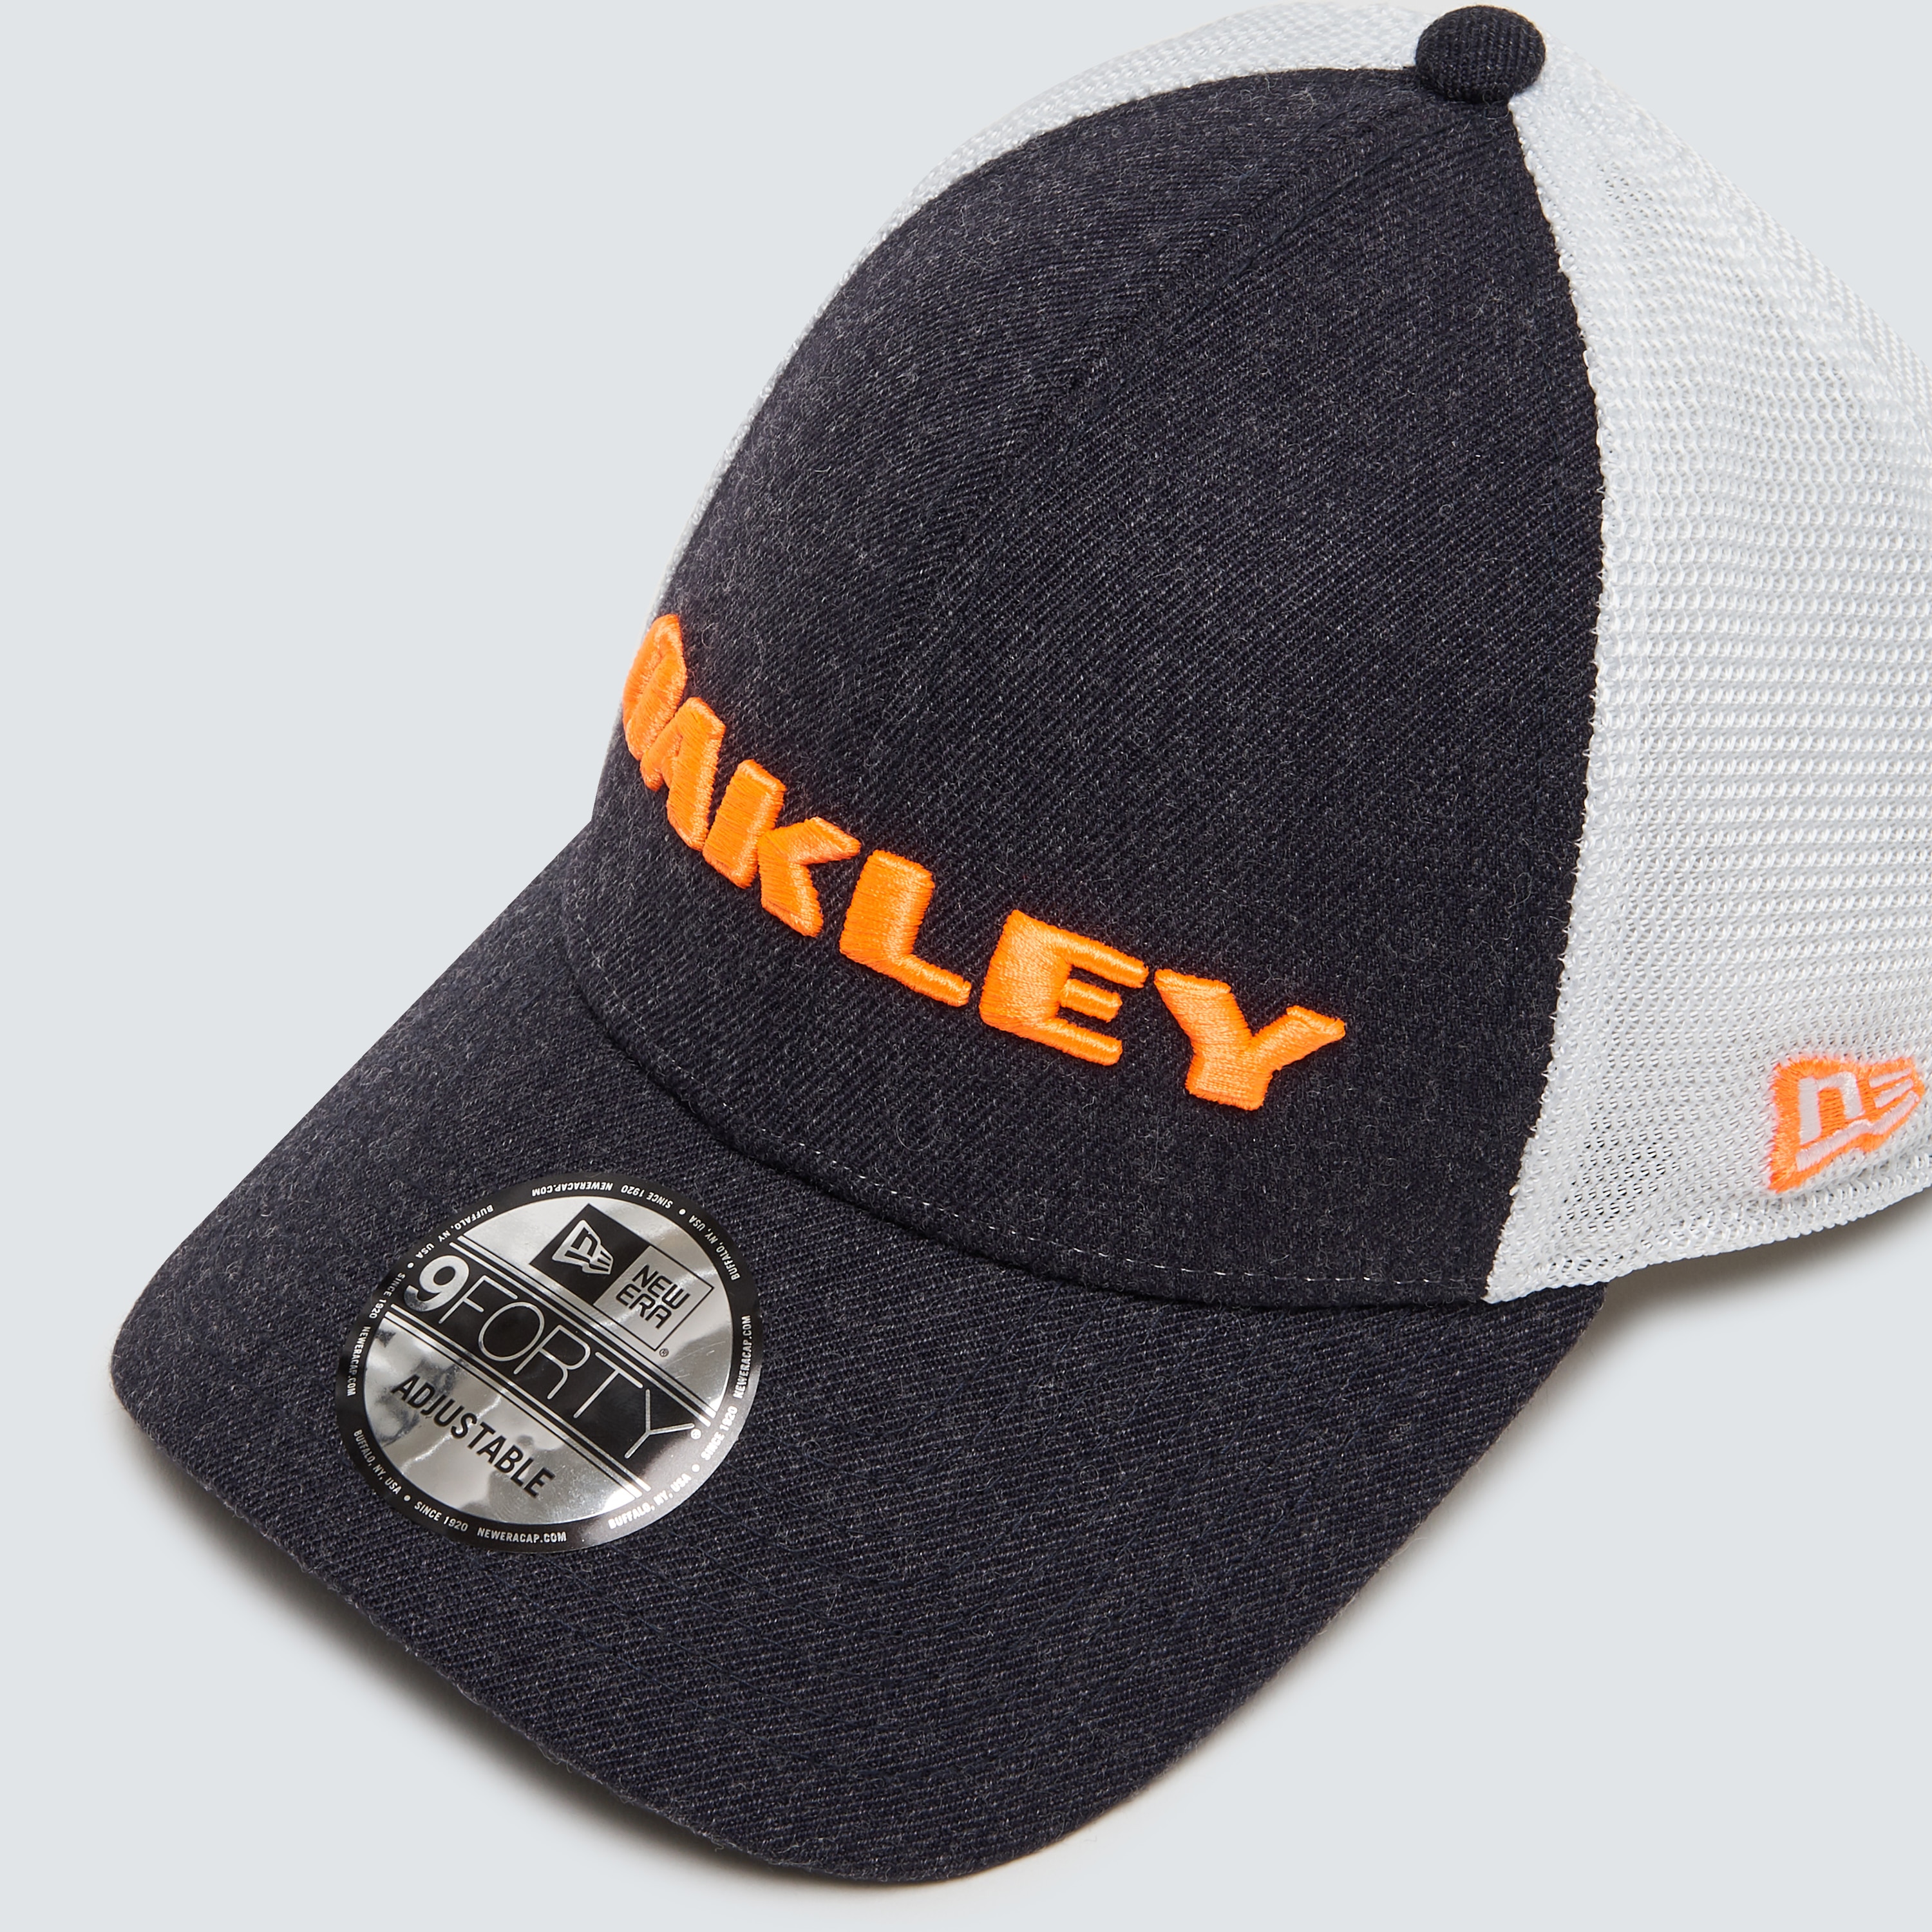 oakley cap new era